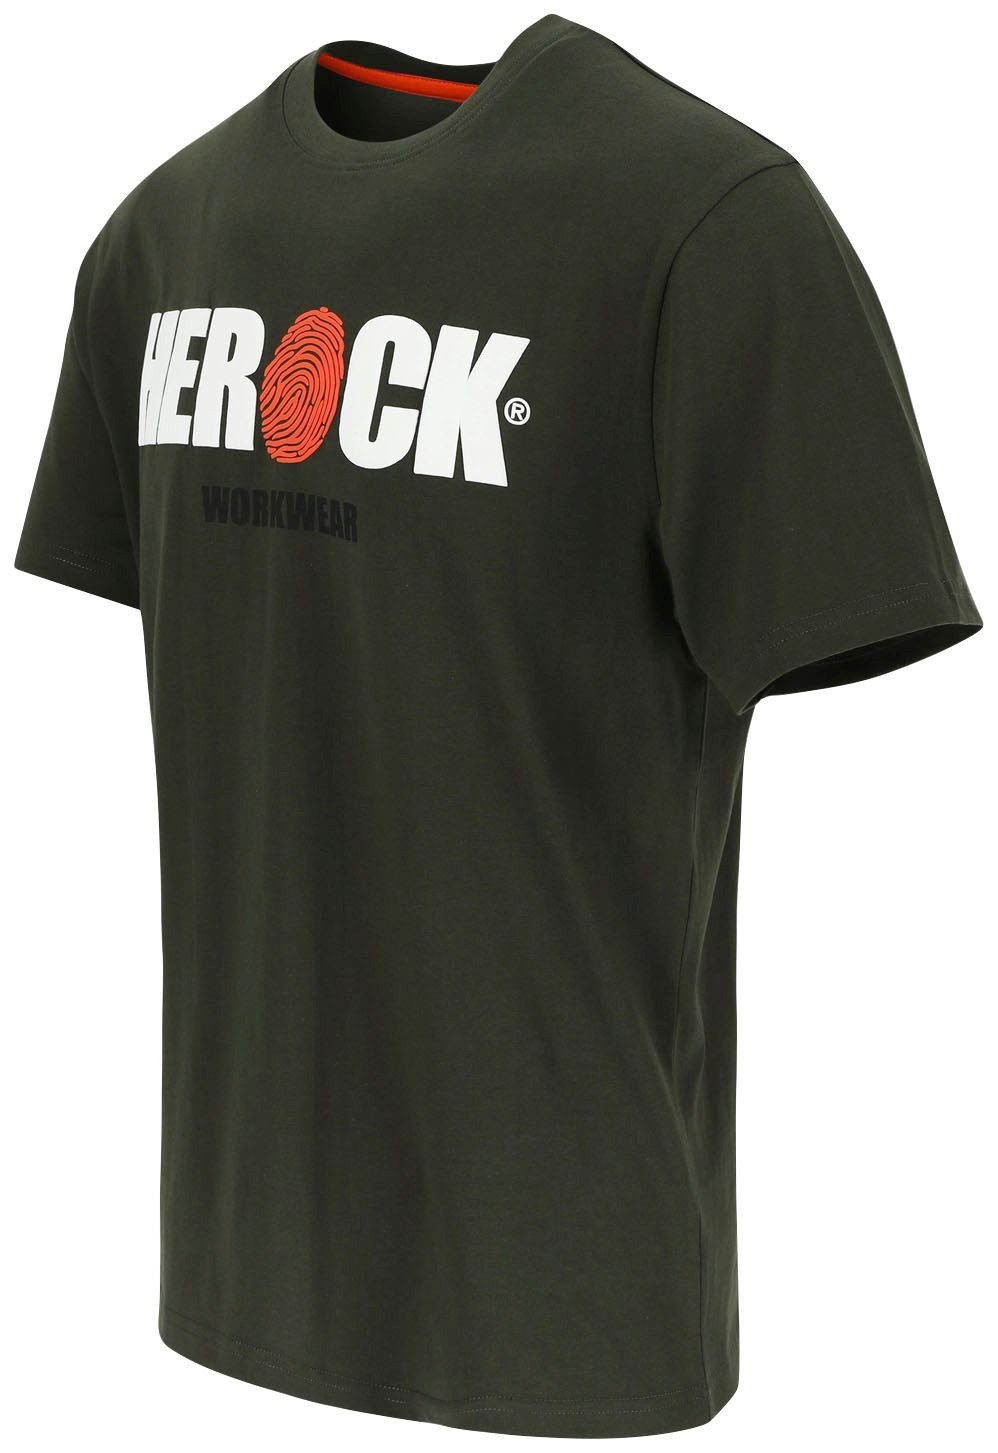 Herock T-Shirt ENI Rundhals, Baumwolle, Herock®-Aufdruck, mit khaki angenehmes Tragegefühl